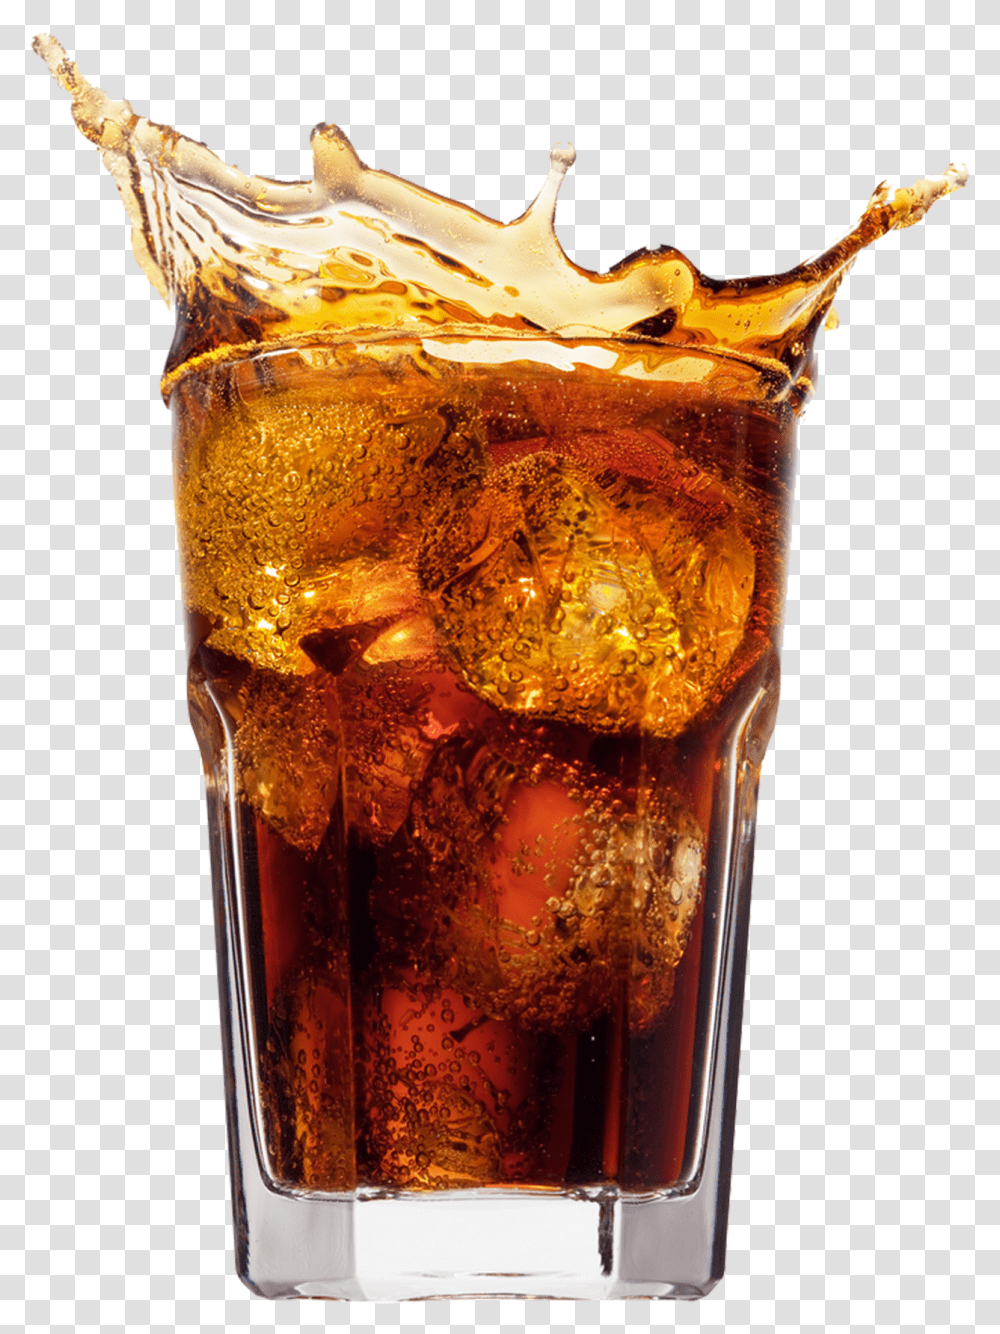 Coca Cola Glass Bottle 4 Image Coca Cola, Soda, Beverage, Drink, Cocktail Transparent Png